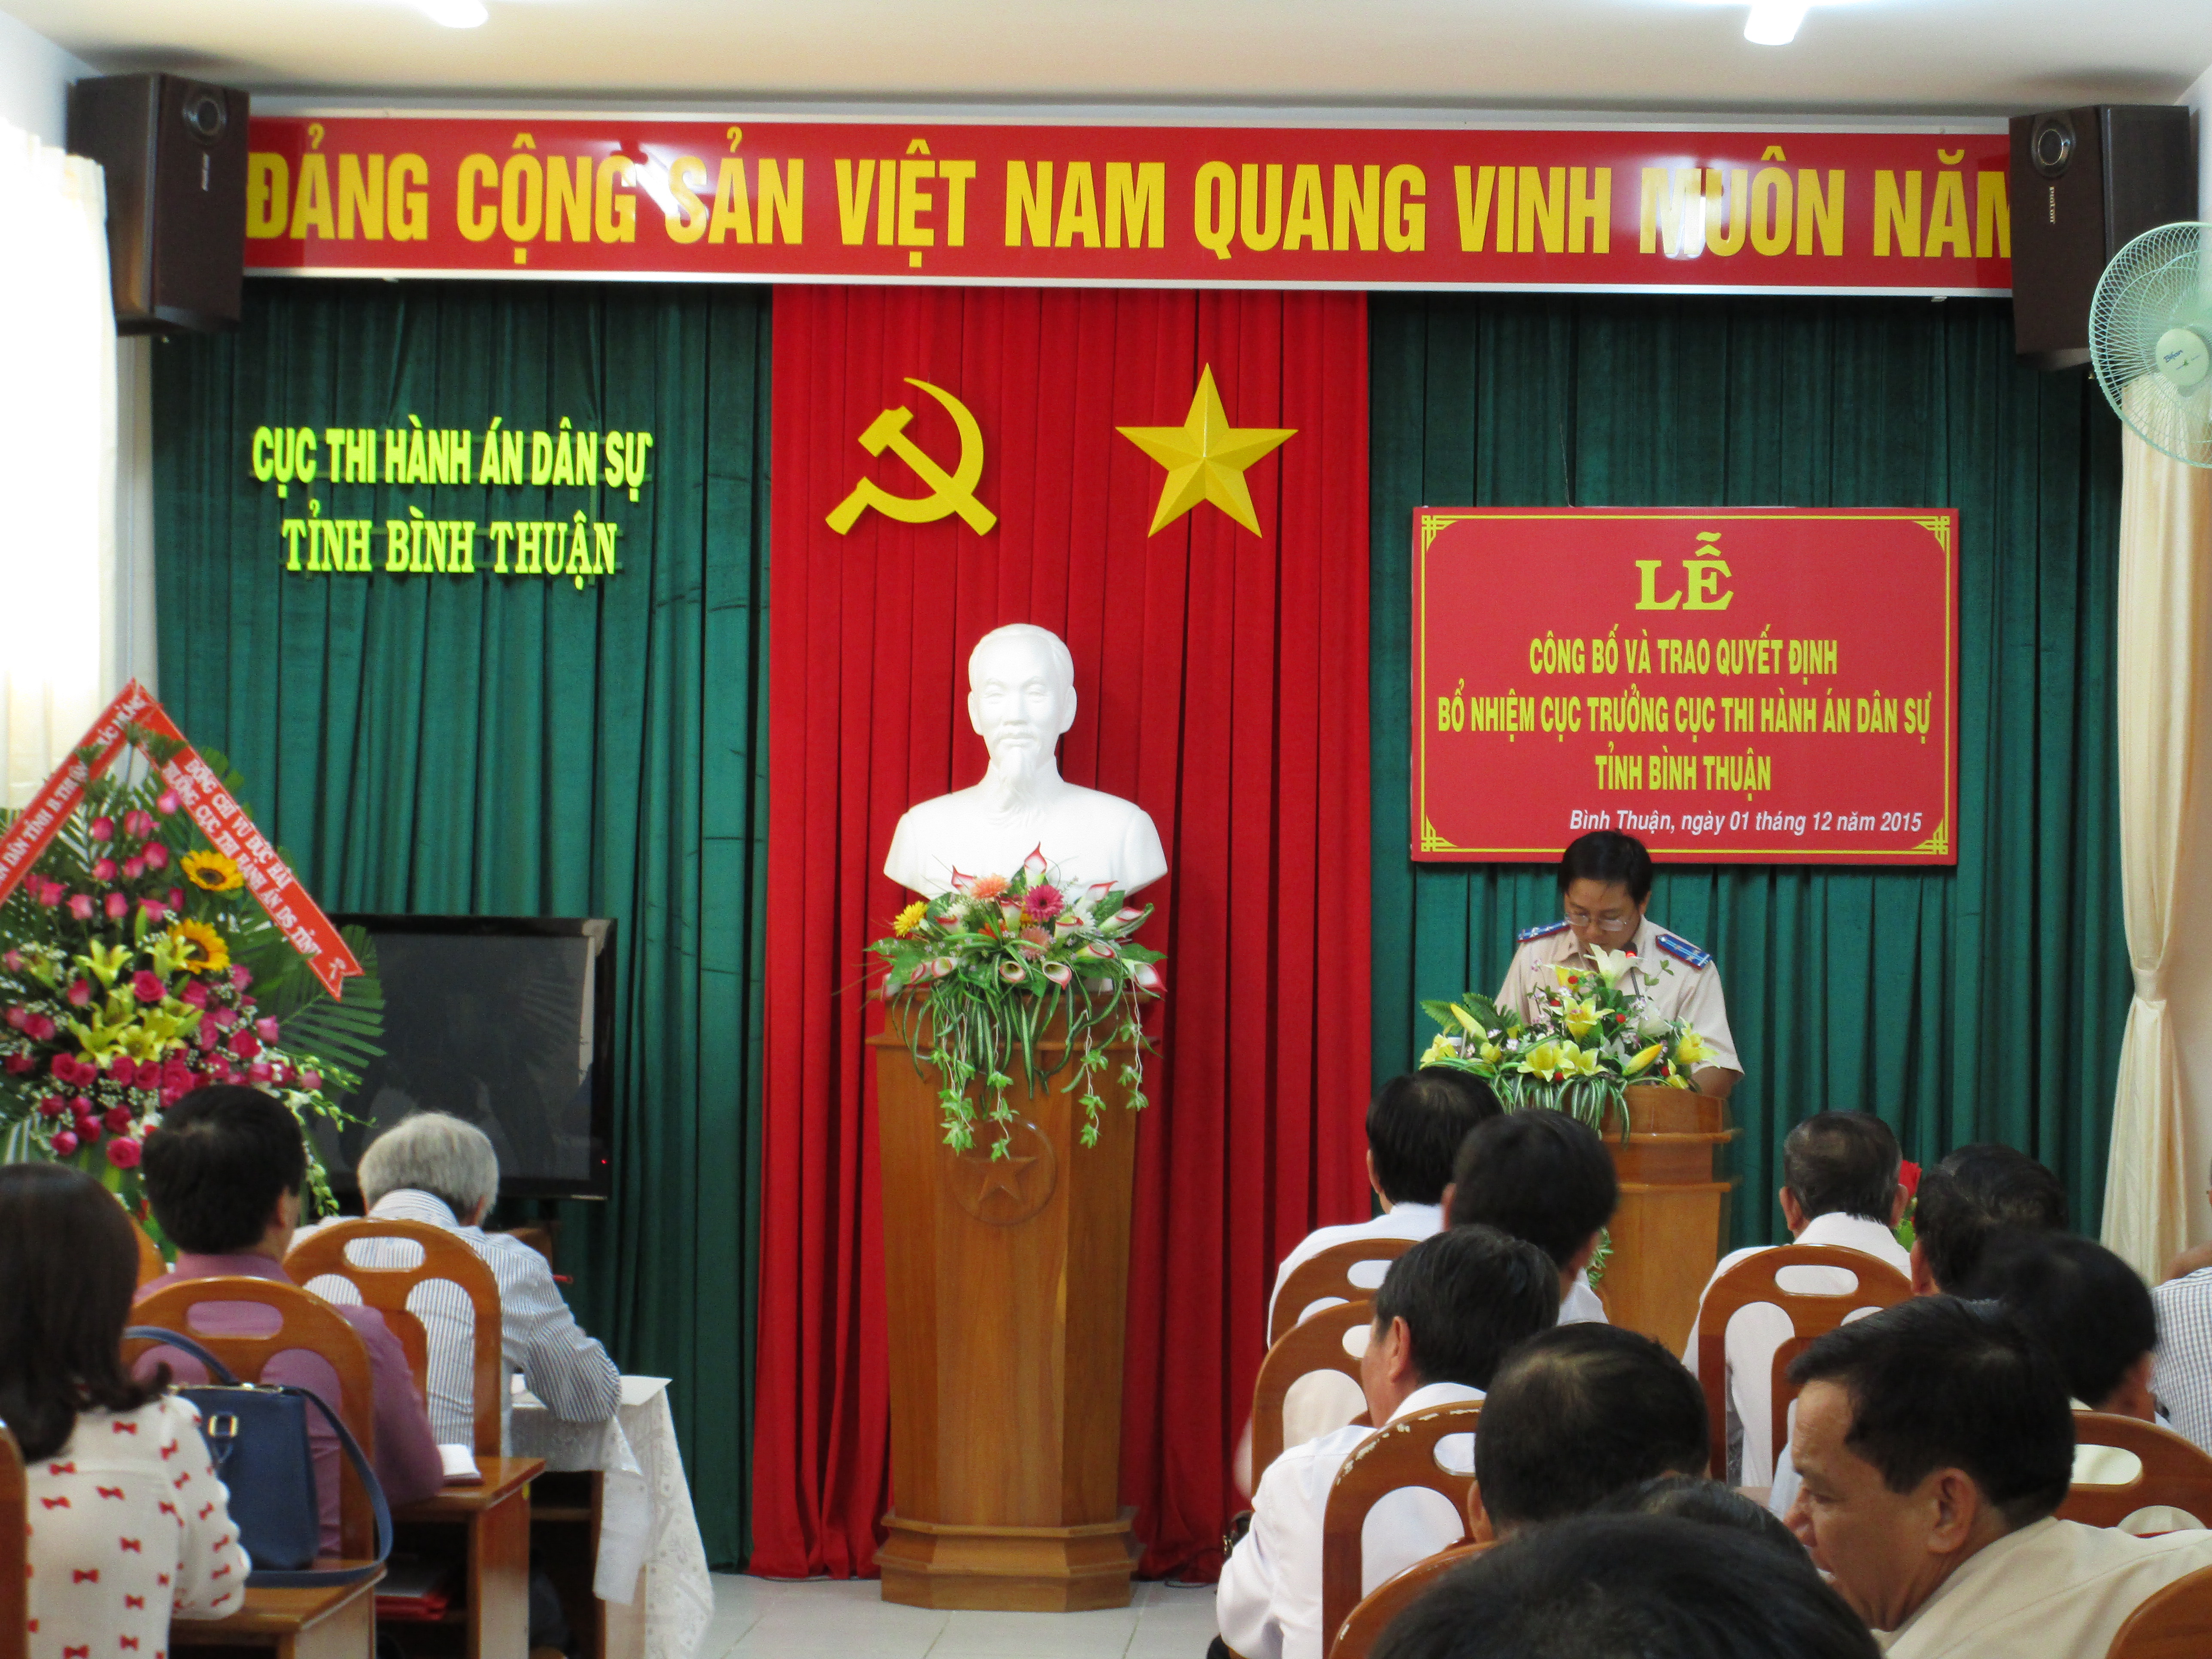 Lễ công bố và trao Quyết định bổ nhiệm Cục trưởng Cục Thi hành án dân sự tỉnh Bình Thuận